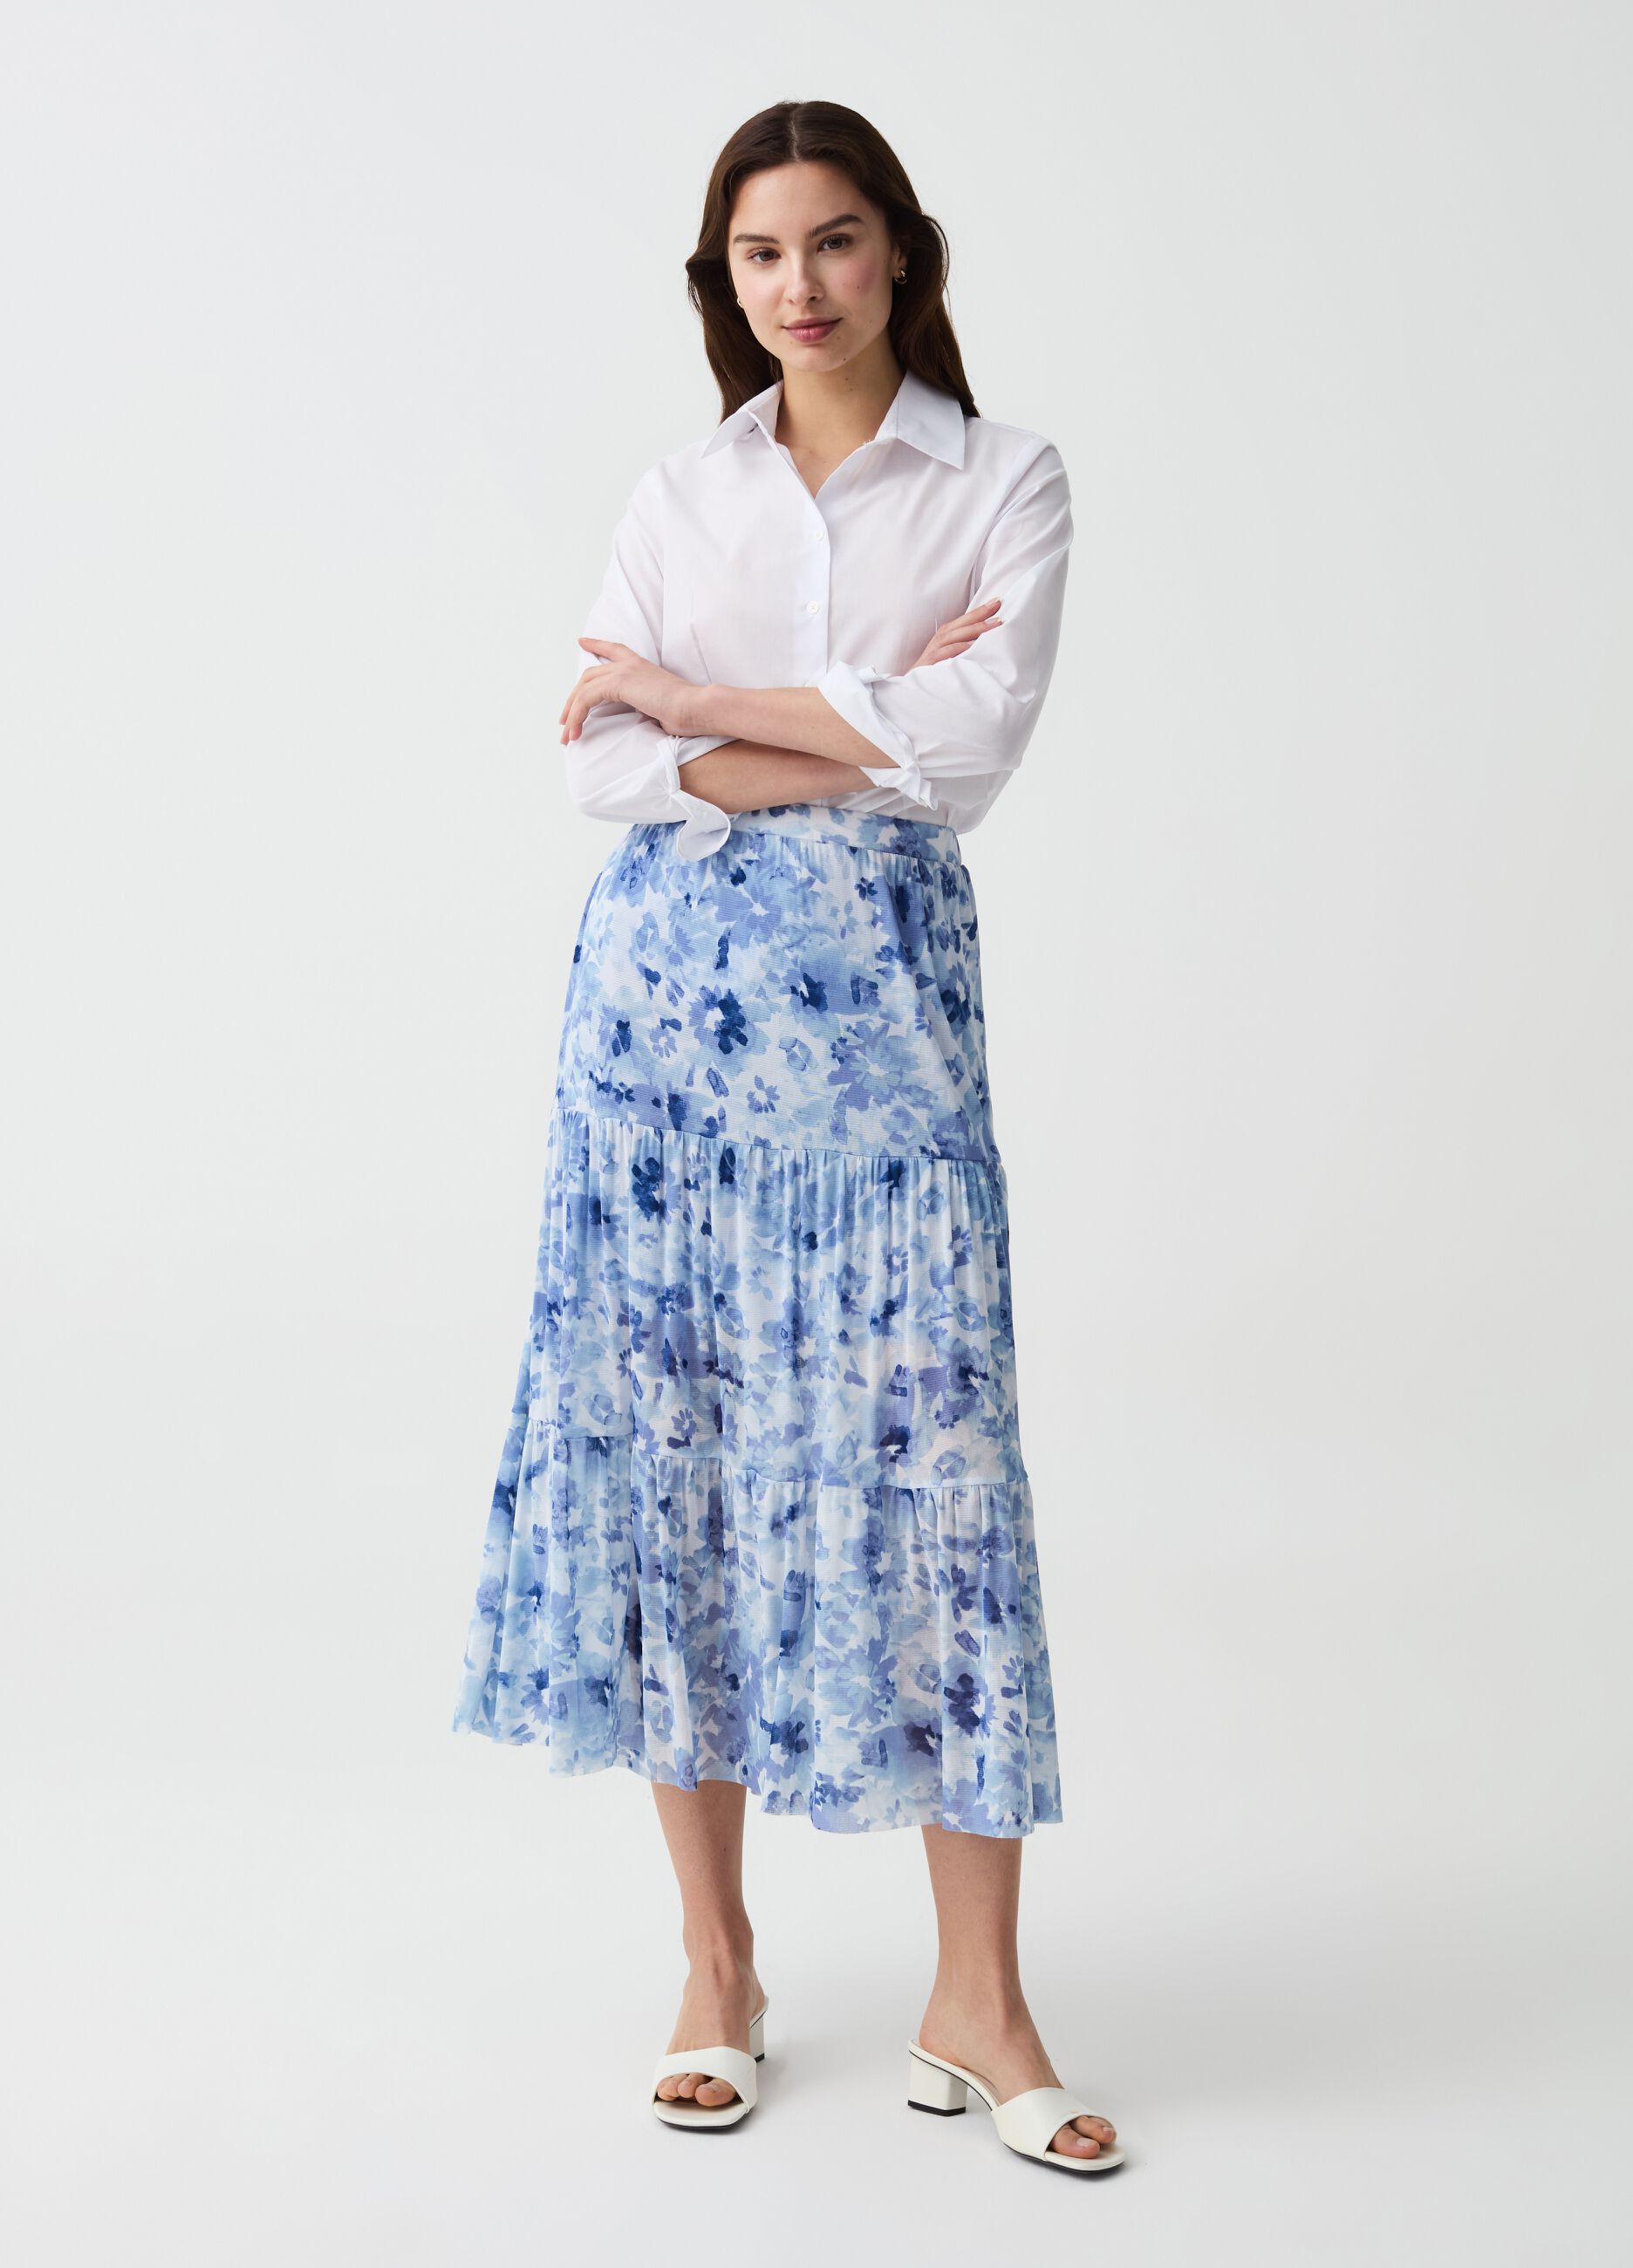 Long skirt in floral mesh